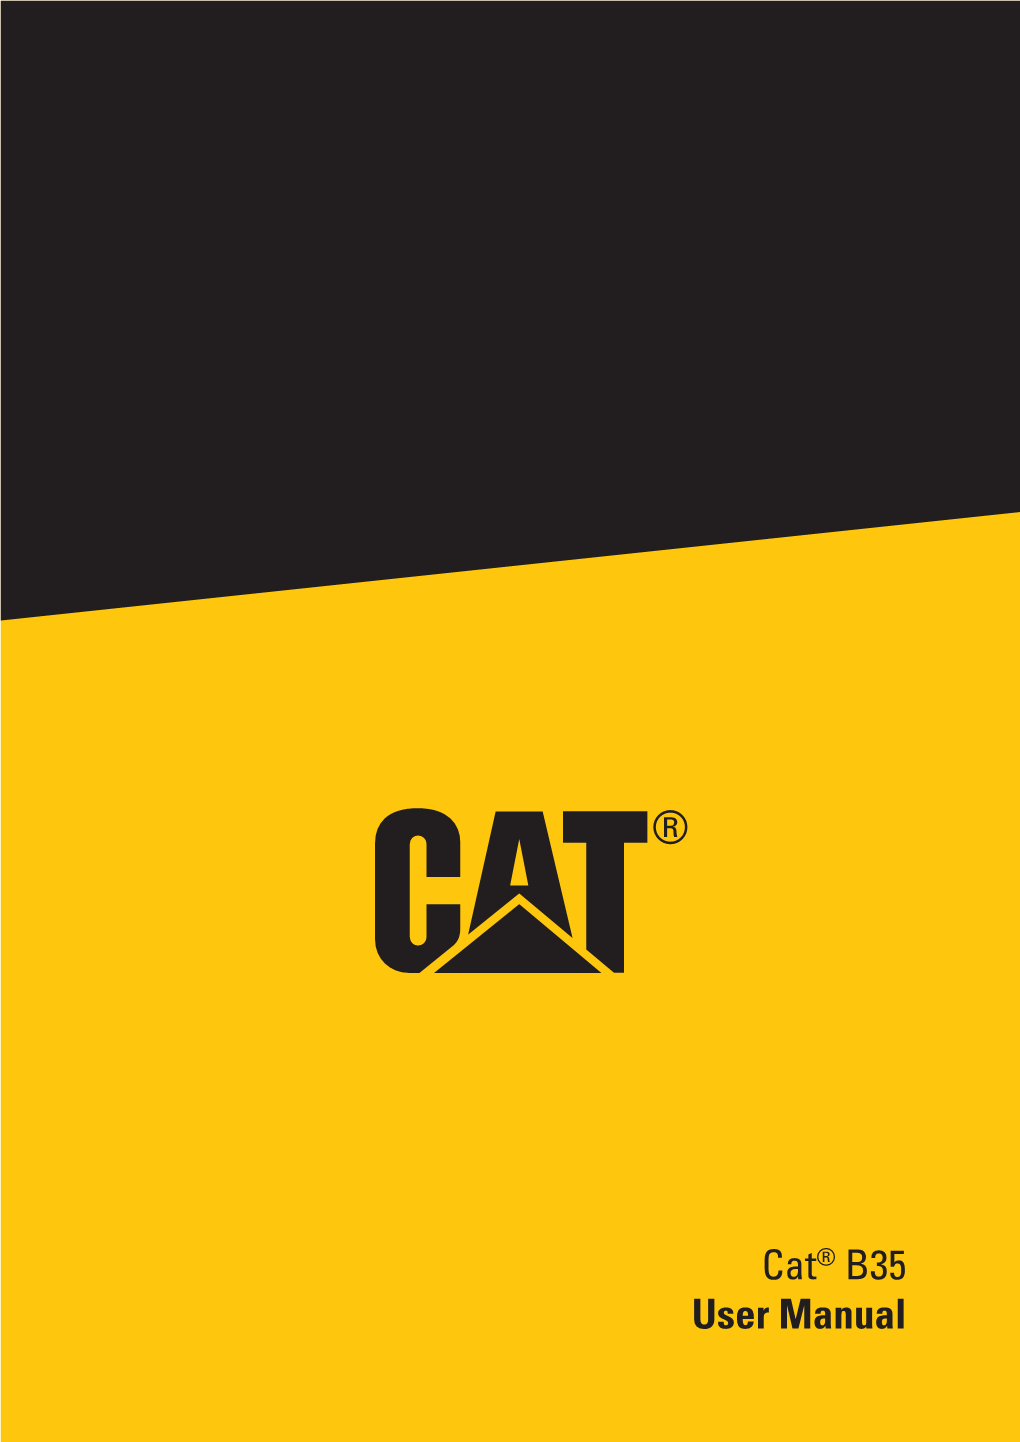 Cat® B35 User Manual